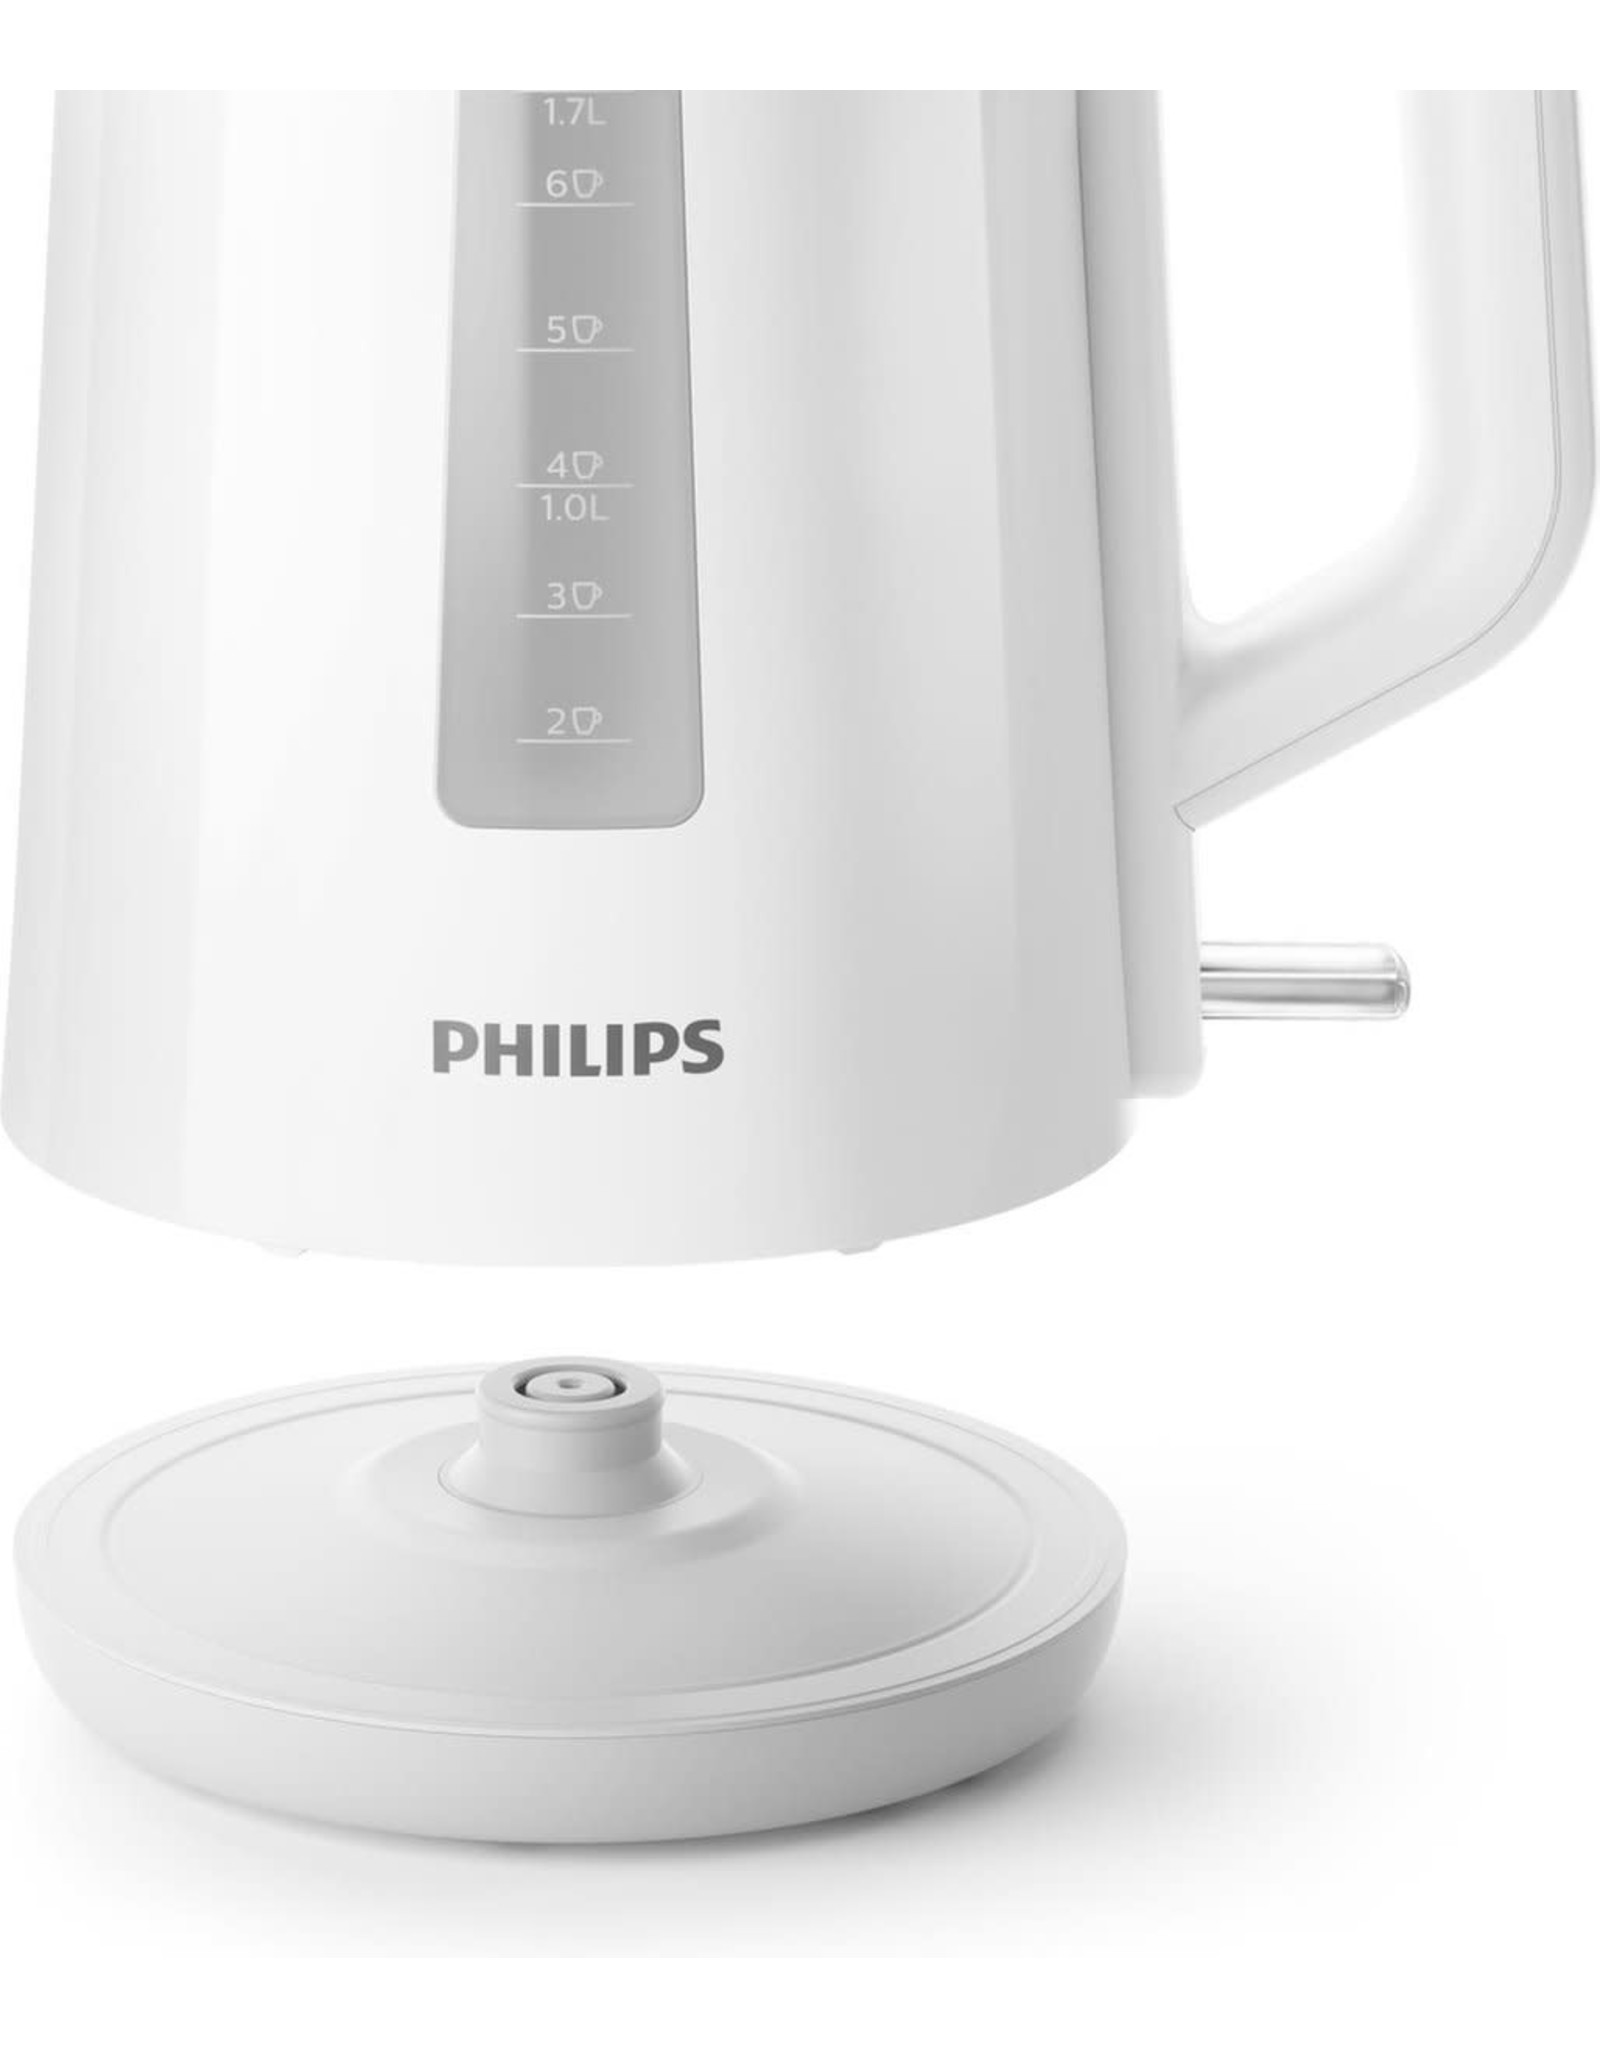 PHILIPS Philips Series 3000 HD9318/00 - Waterkoker - Wit